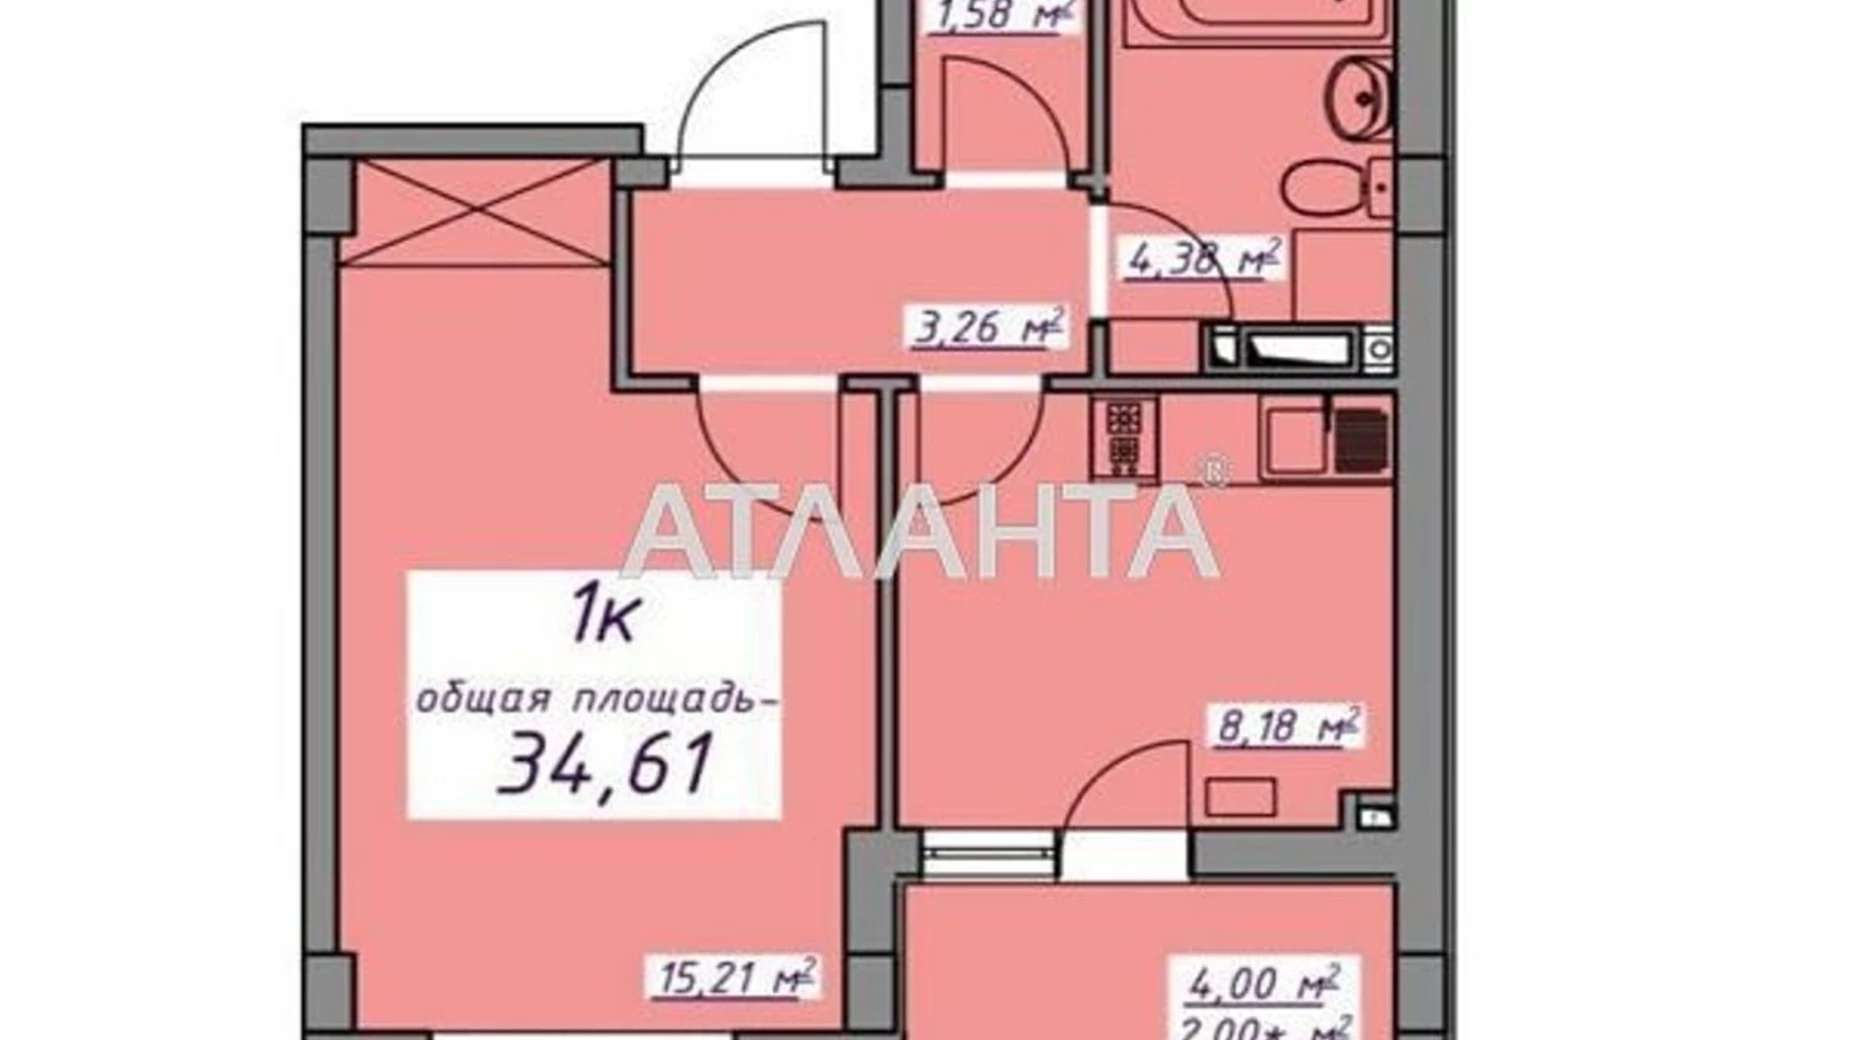 Продається 1-кімнатна квартира 34.61 кв. м у Авангарді, вул. Проїзна